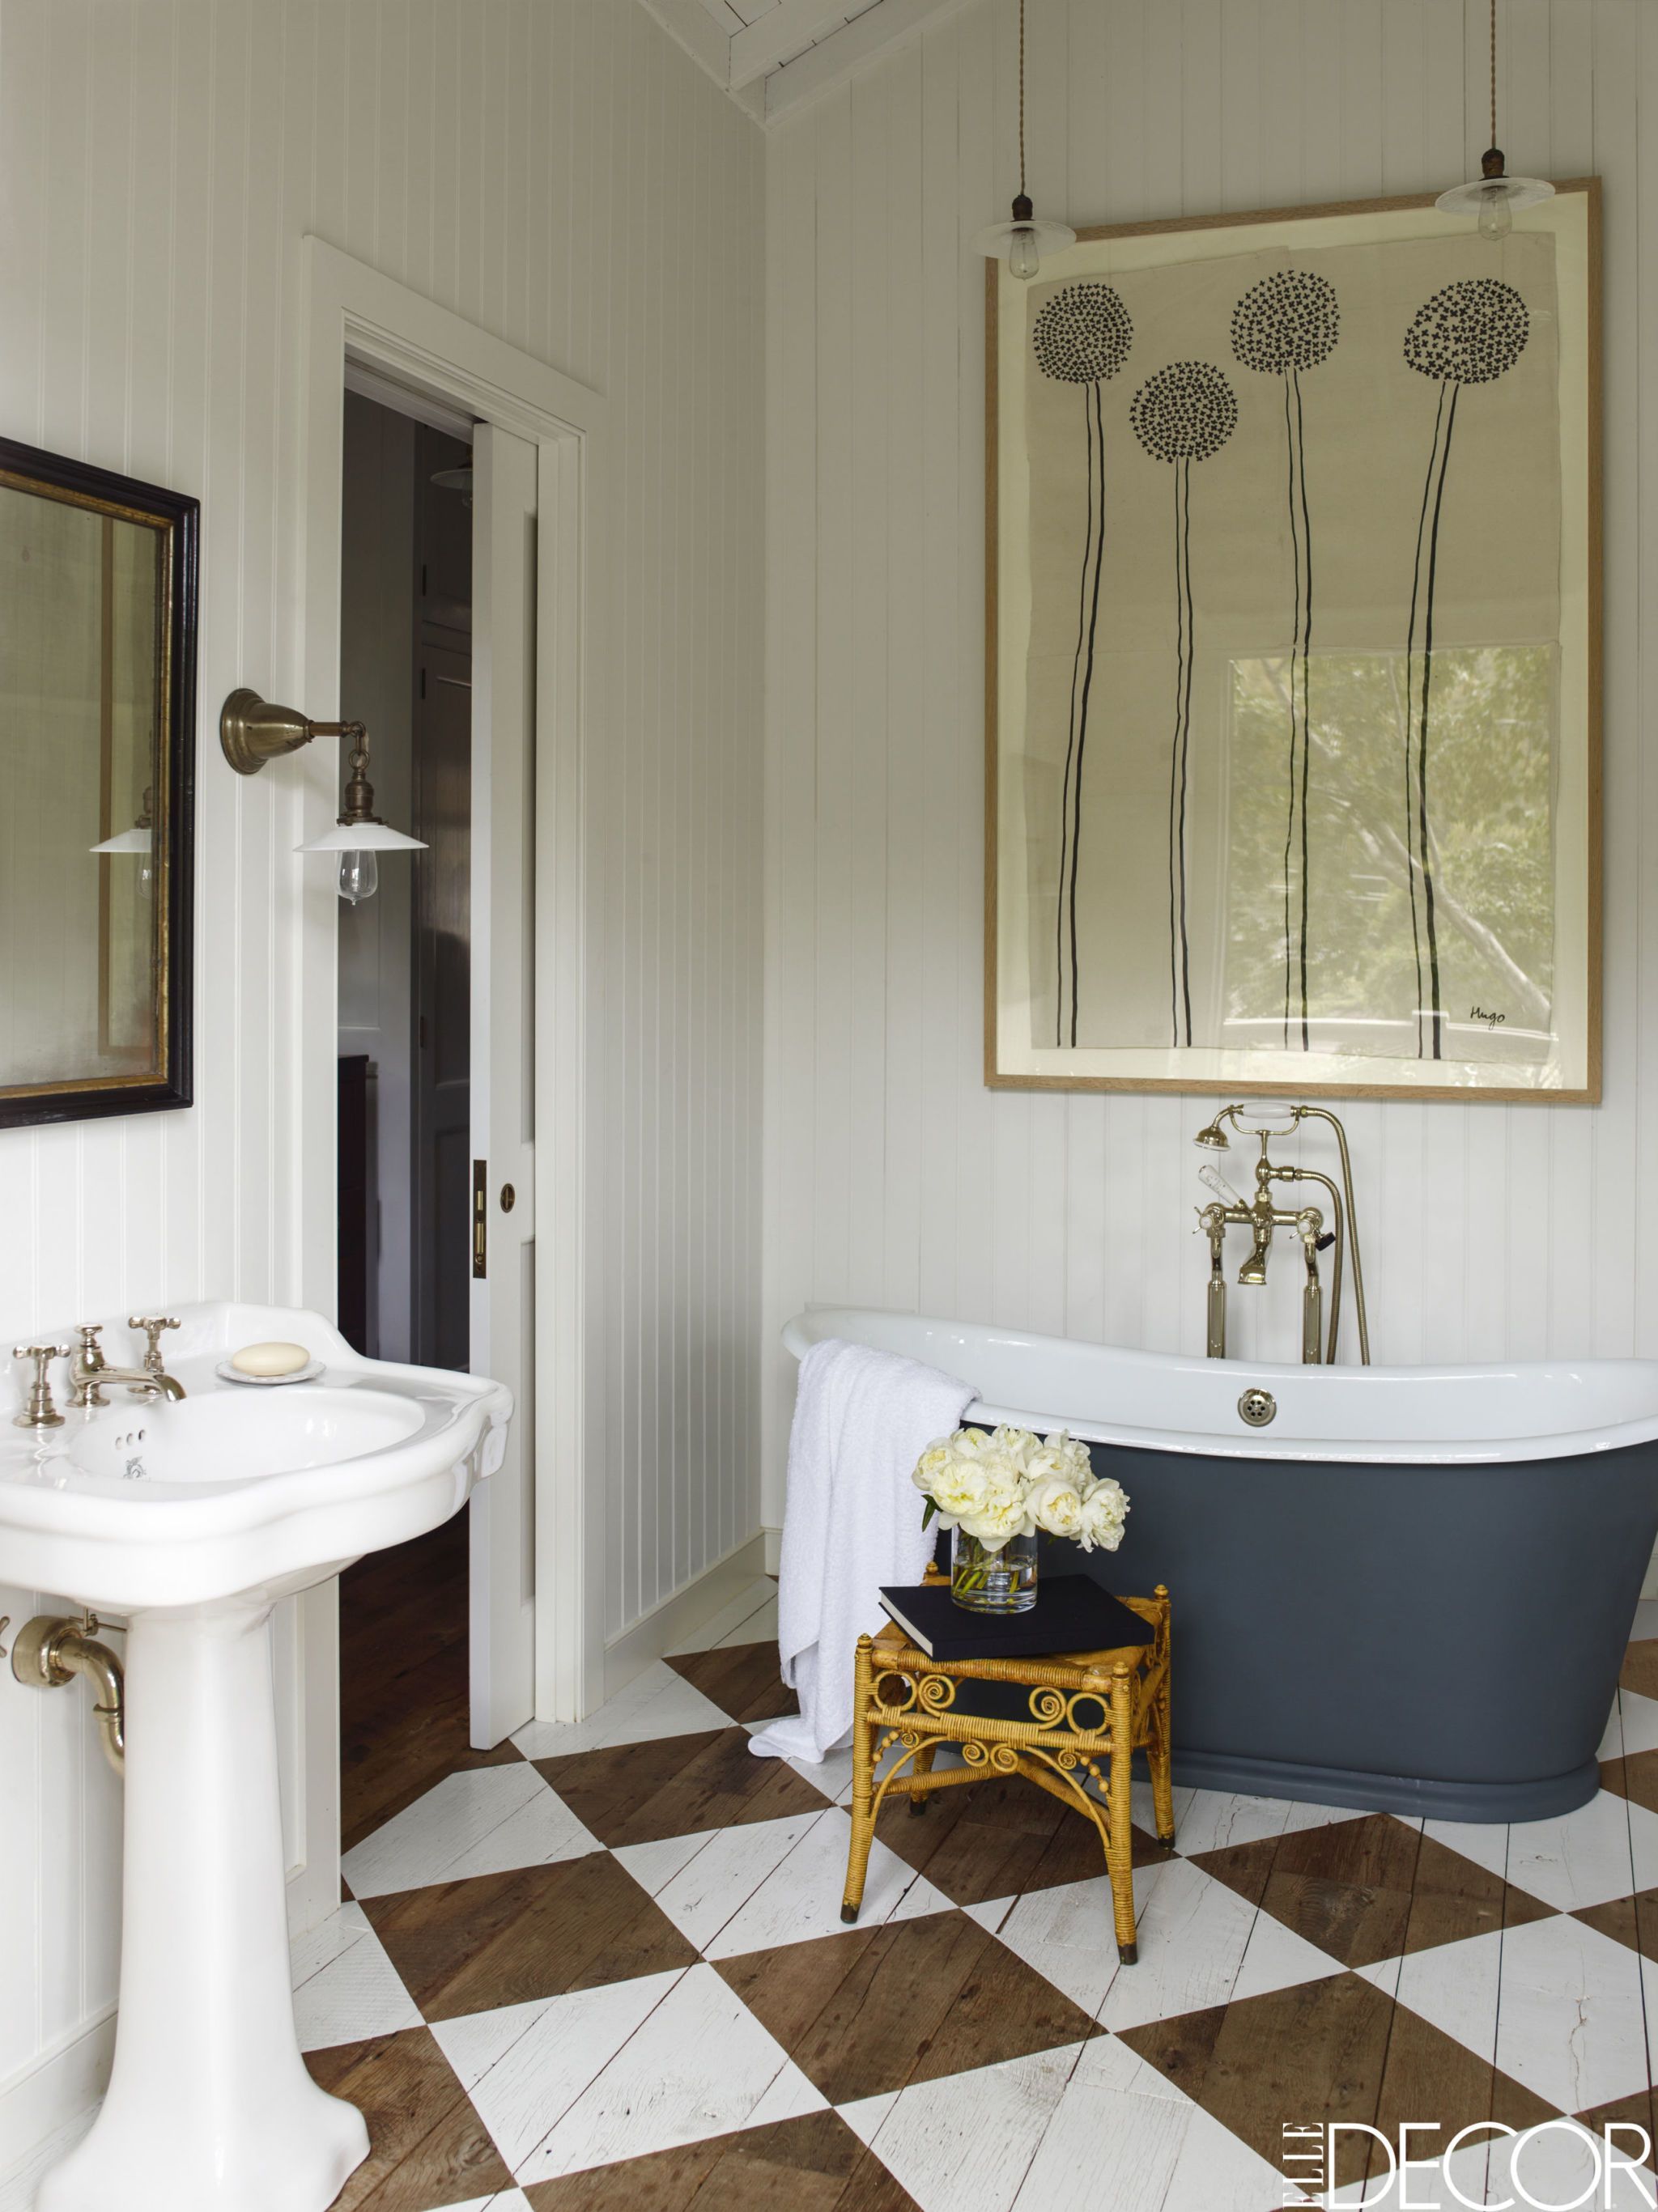 18 Ideas For Rustic Bathroom Decor   Room Ideas